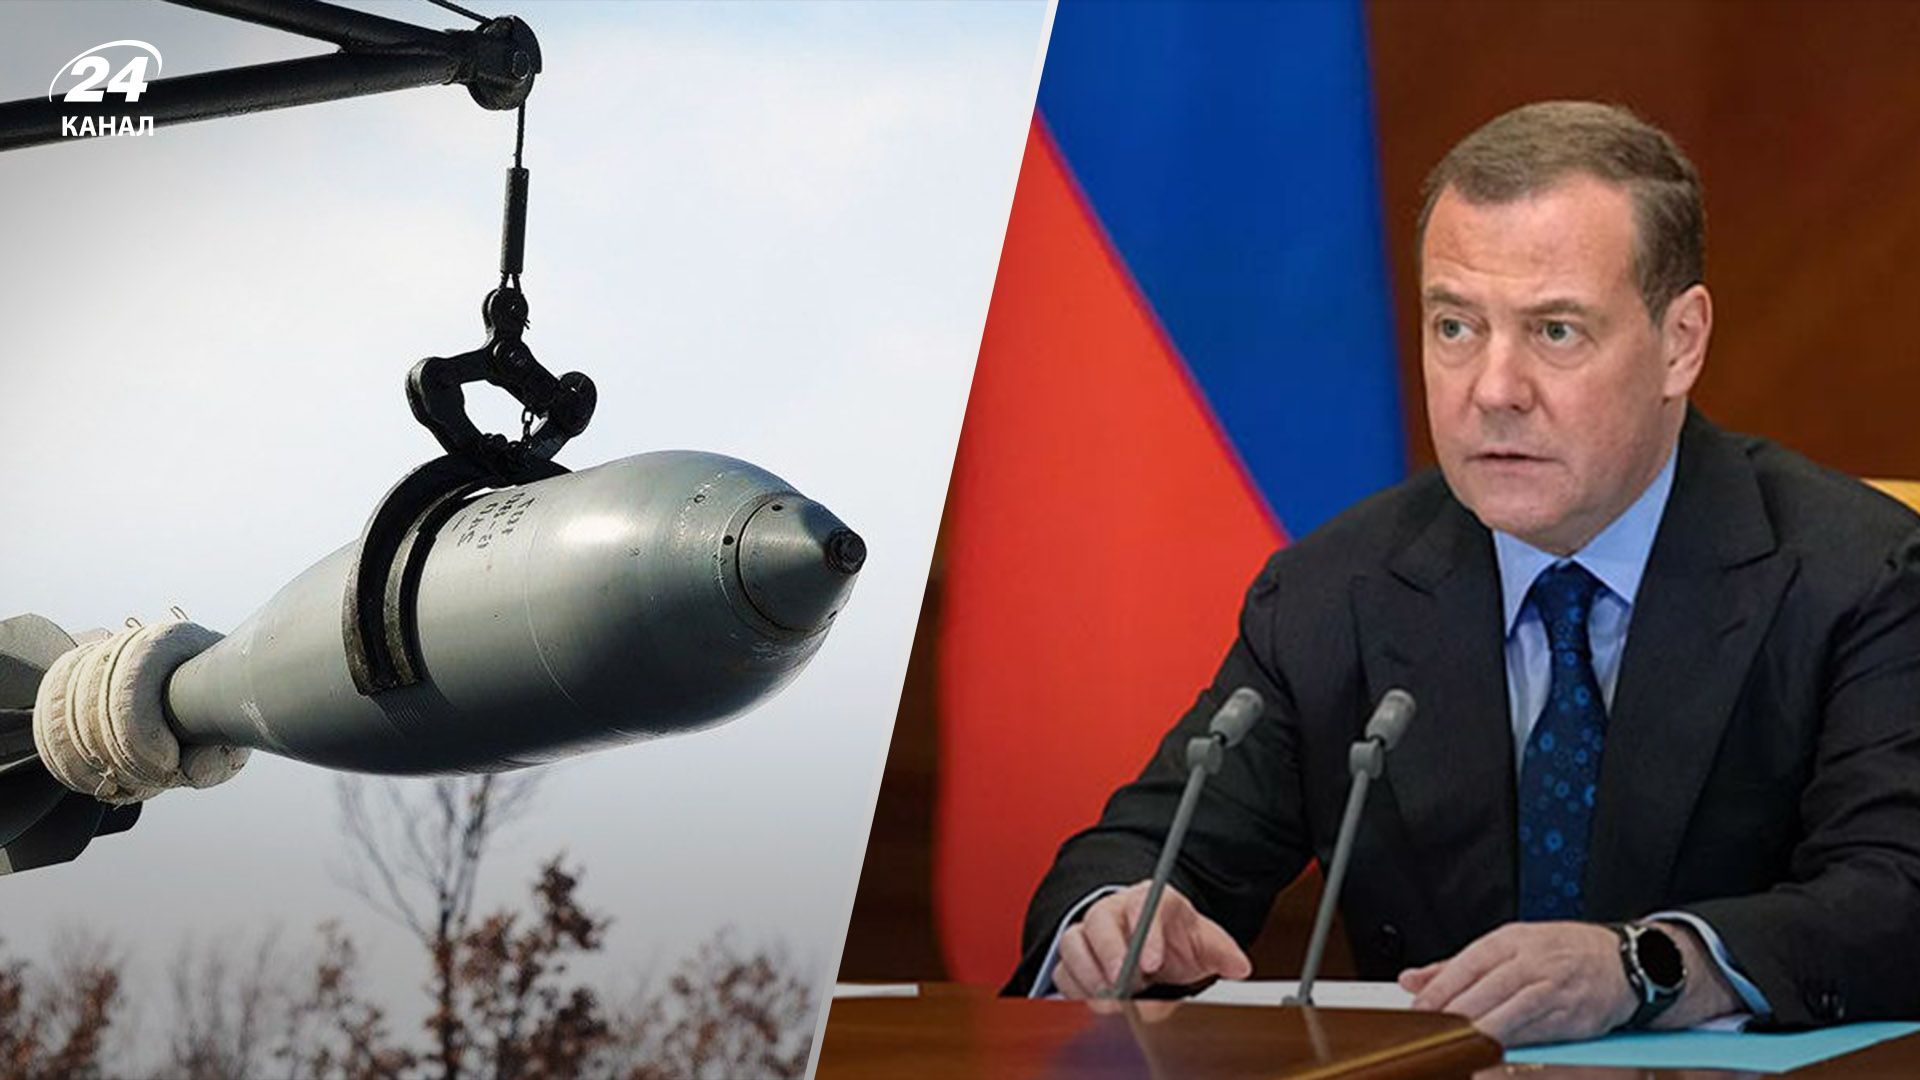 "Тихое разделение" Украины и ядерная война: Медведев снова оскандалился циничными заявлениями - 24 Канал